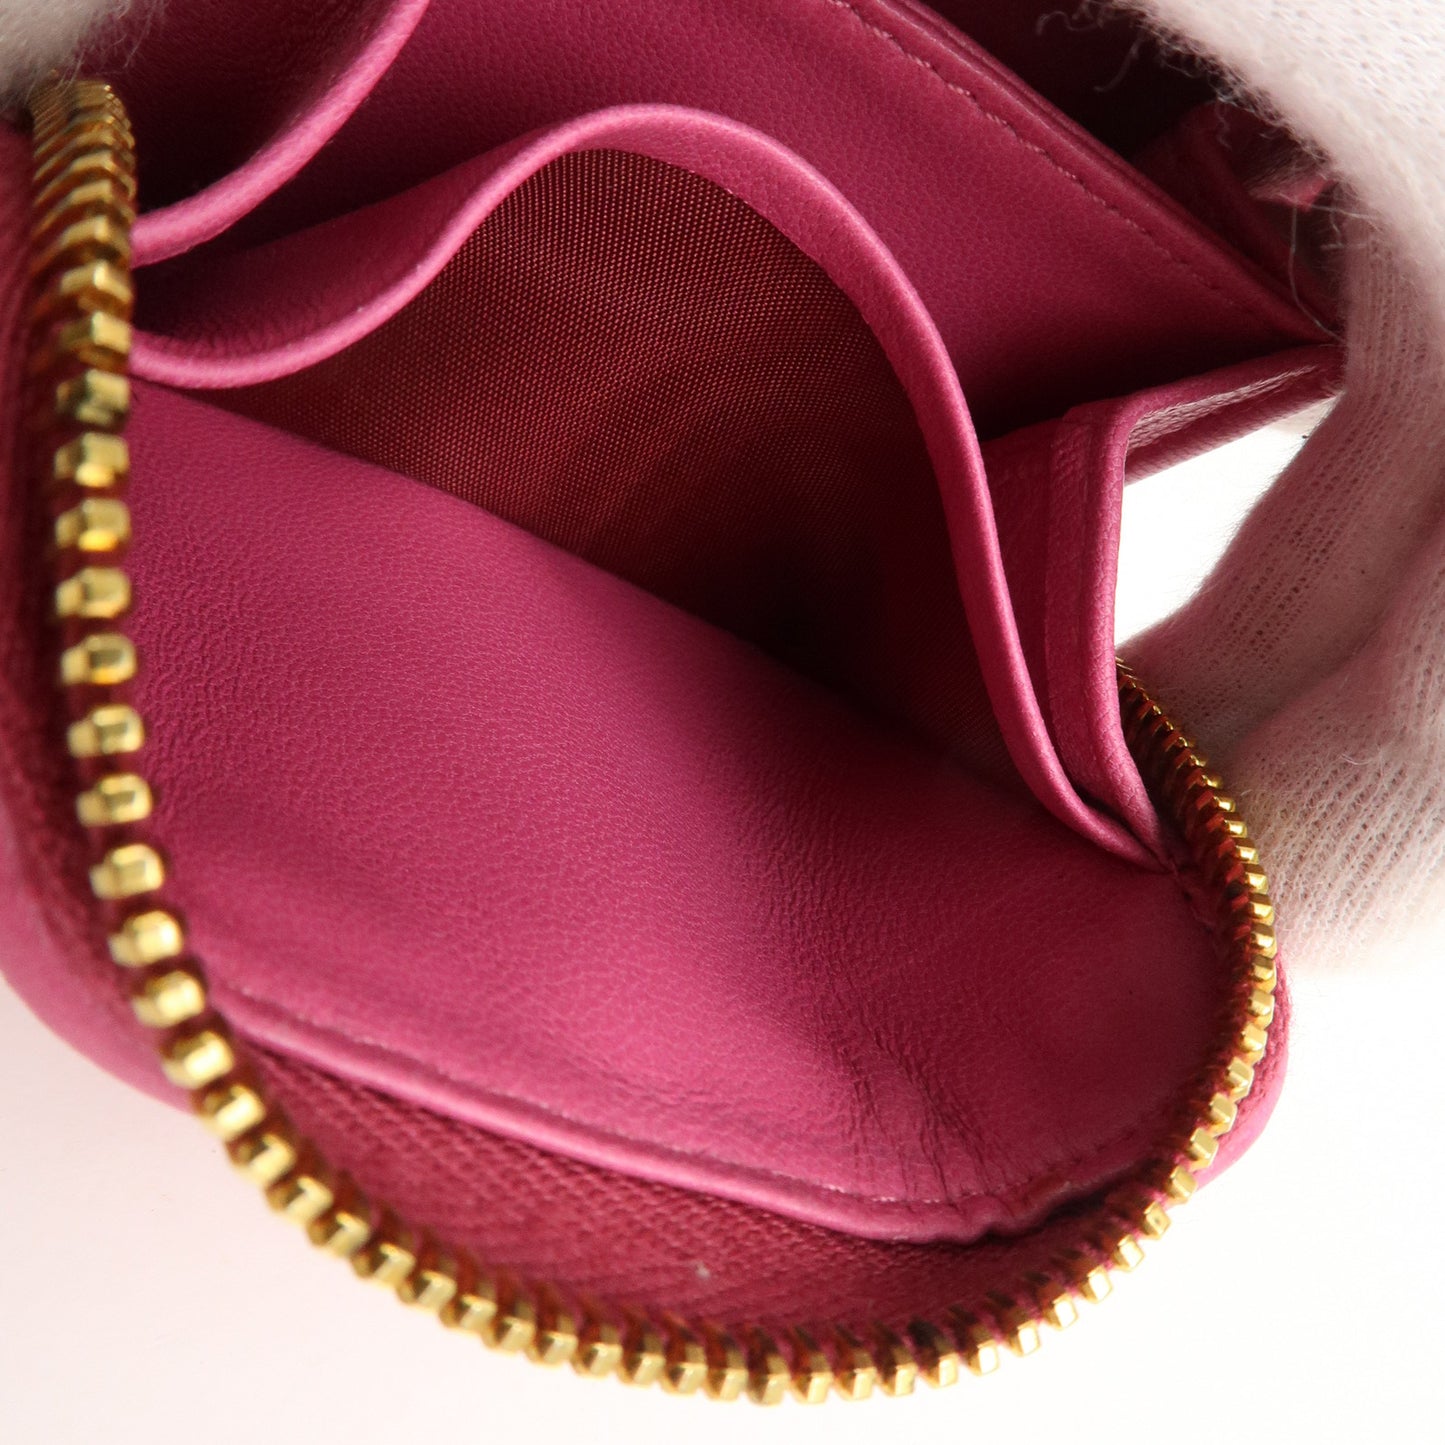 MIU MIU Matelasse Leather Round Zippy Coin Purse Pink 5MM268